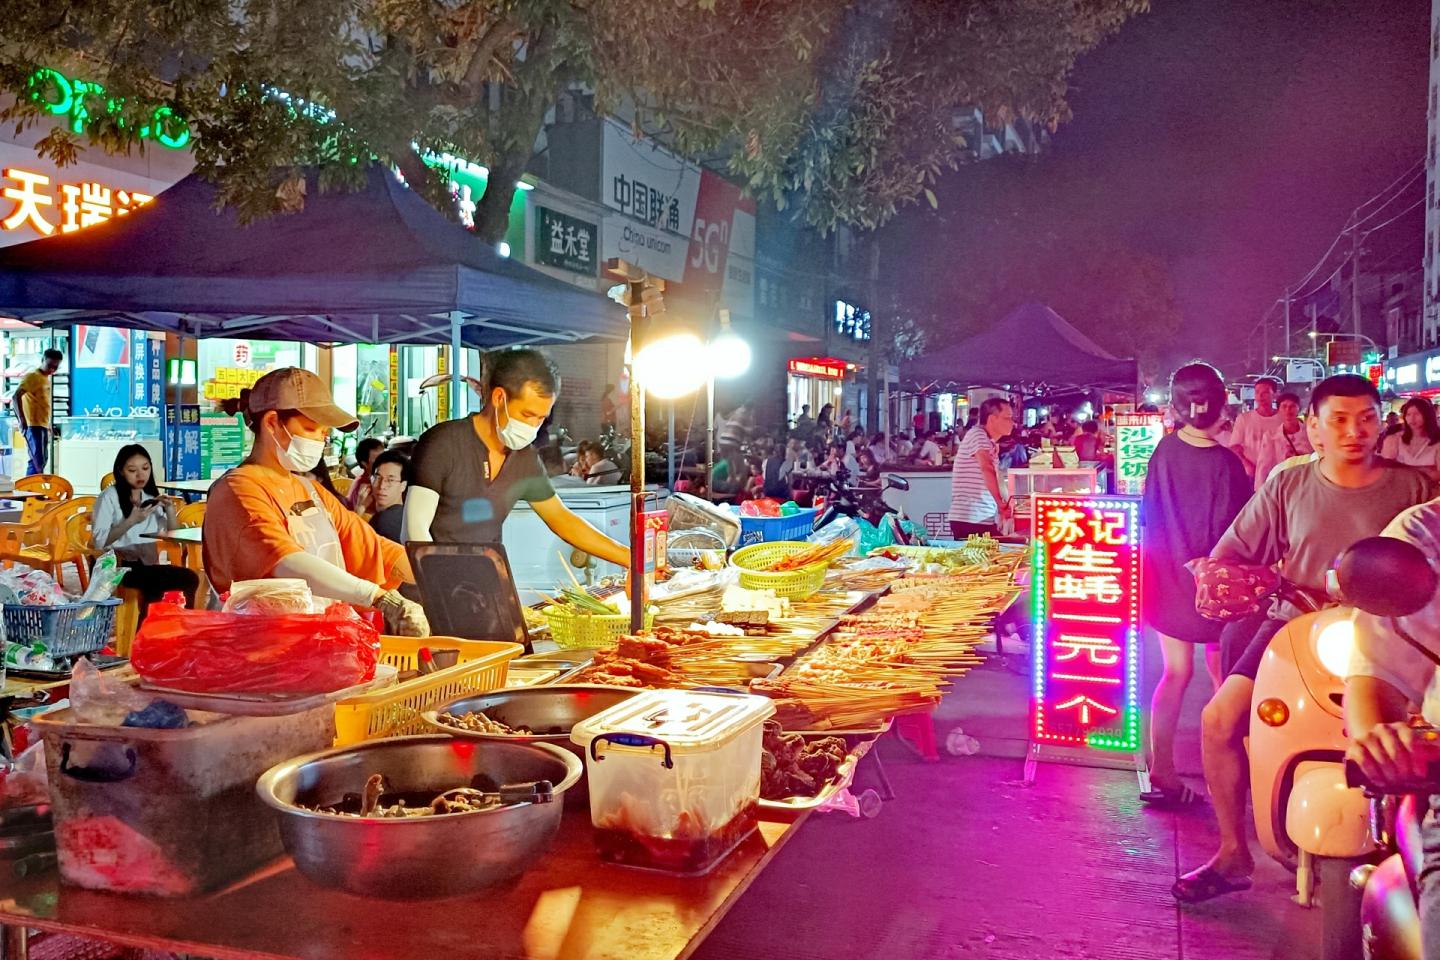 2020年上海锦江乐园夜市照片 - 吃喝玩乐 - 哎呦哇啦au28.cn